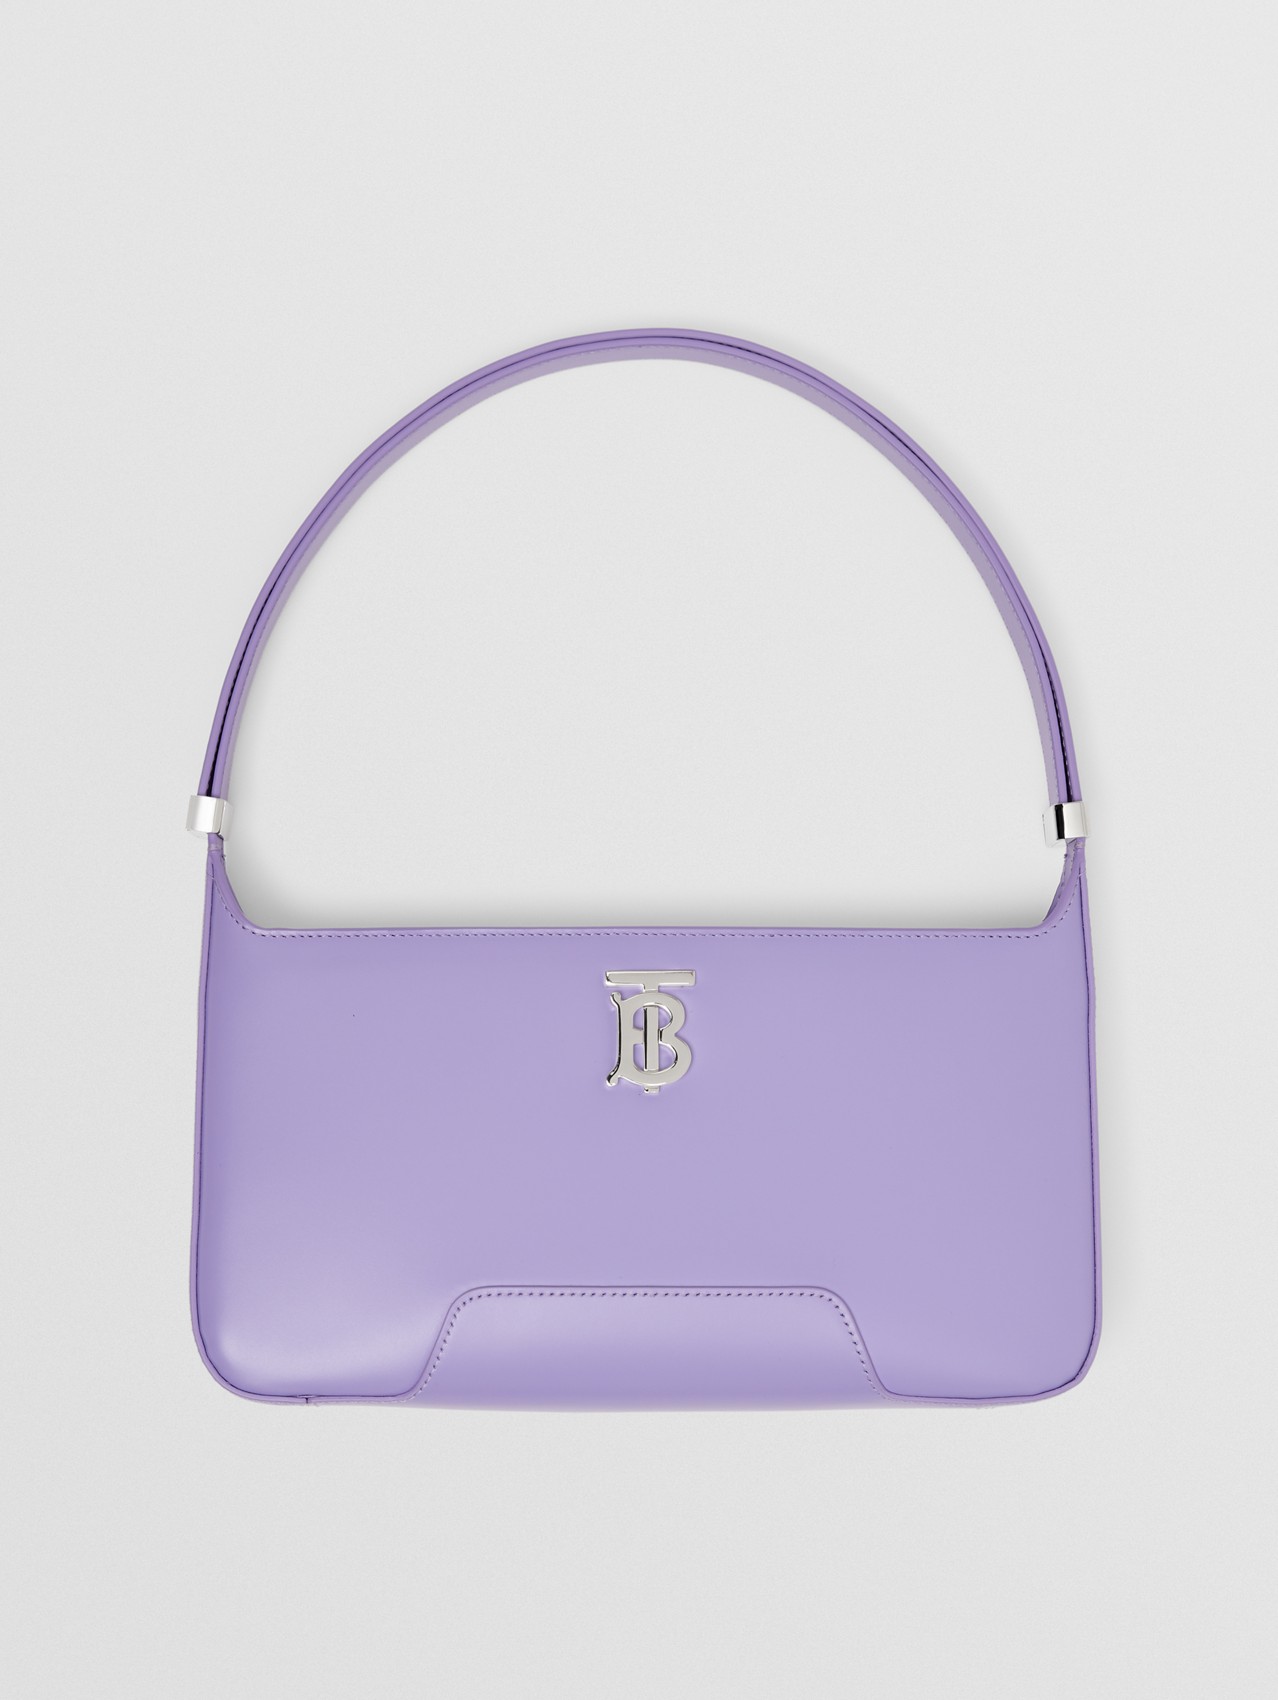 Leather TB Shoulder Bag in Soft Violet